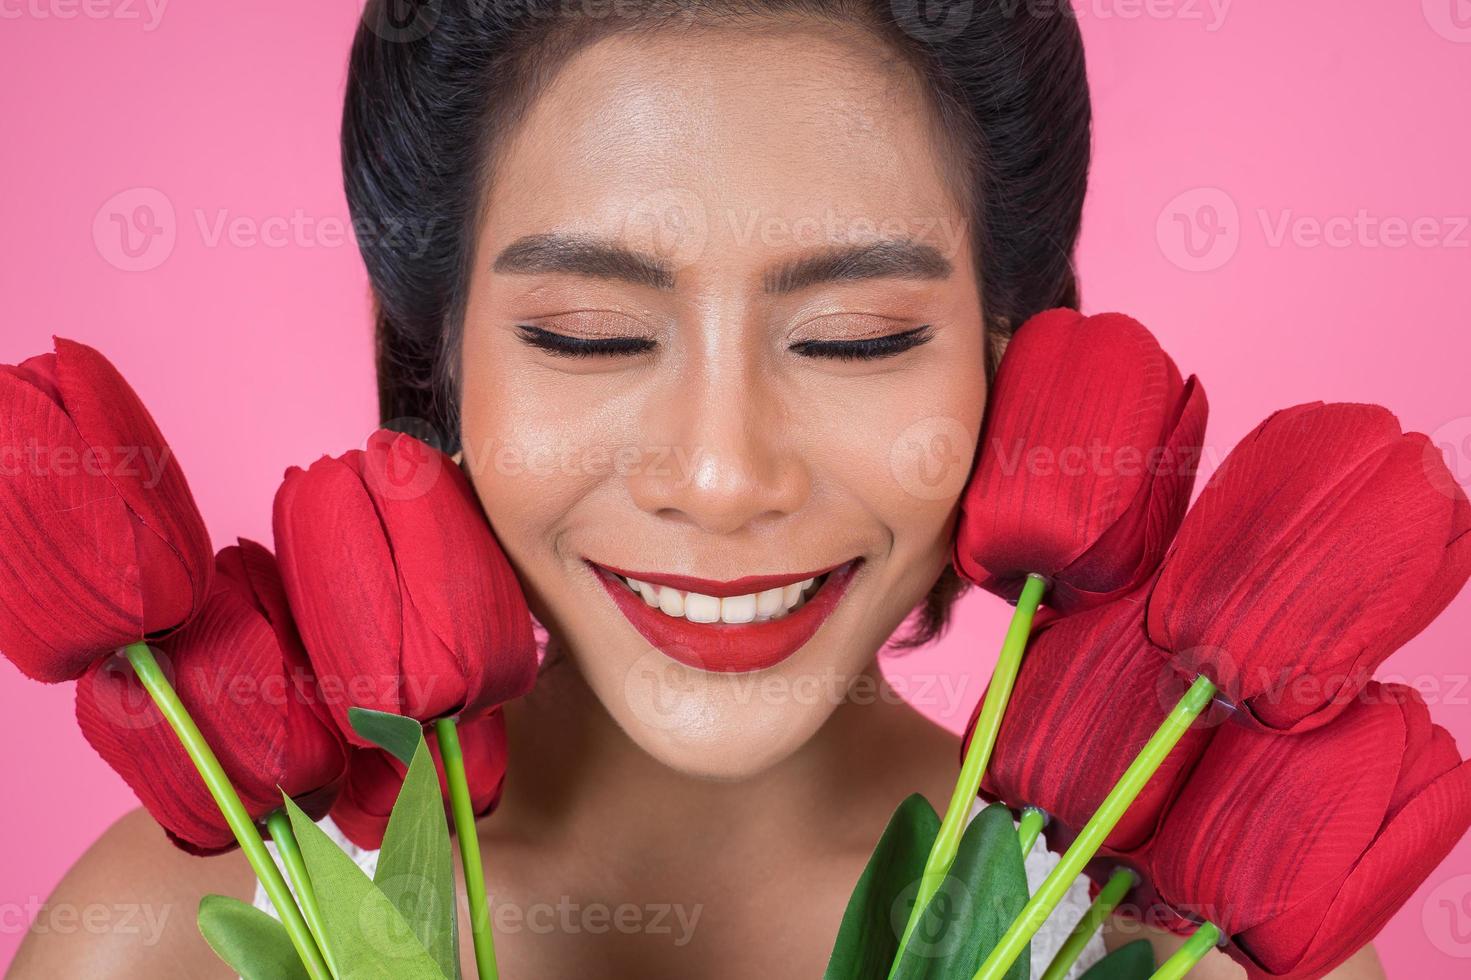 Retrato de una bella mujer con ramo de flores de tulipán rojo foto